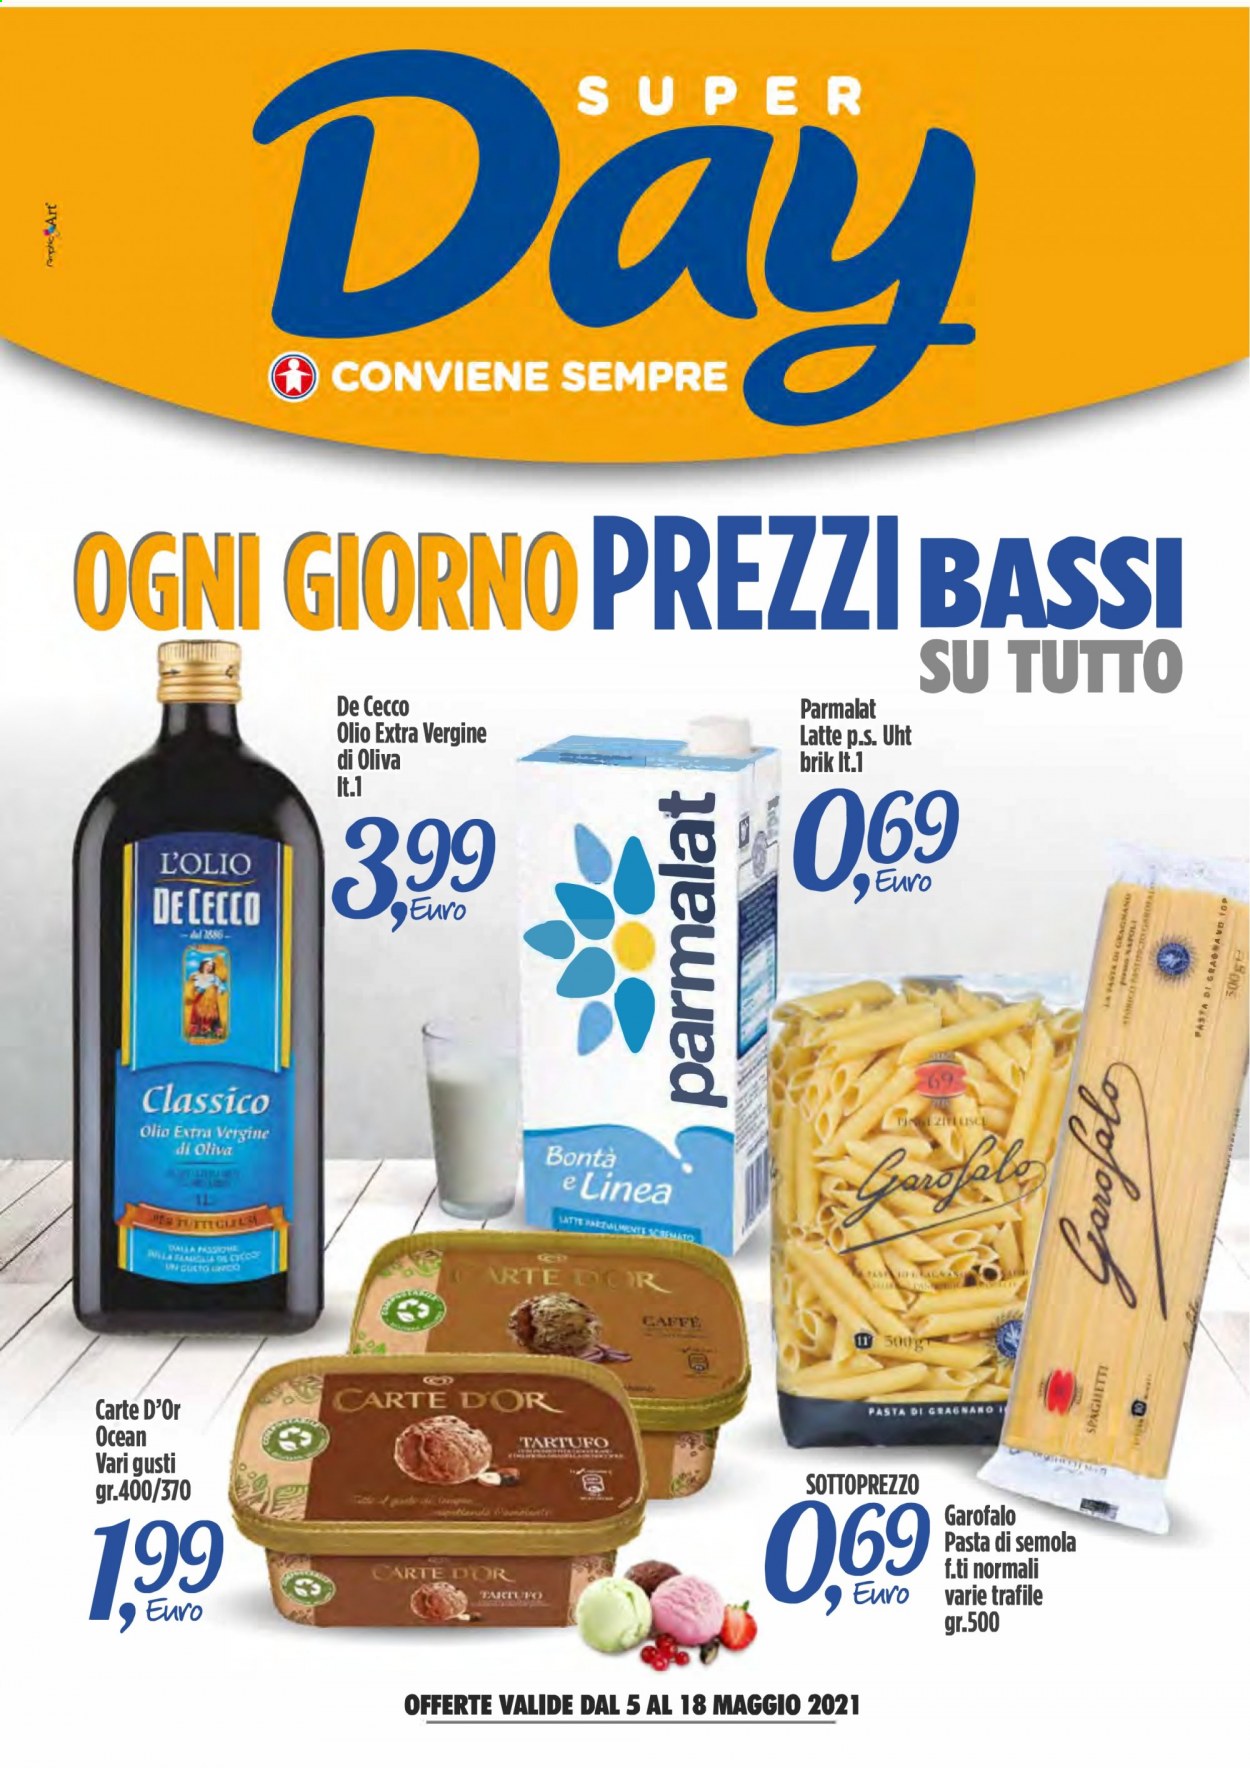 thumbnail - Volantino Sigma - 5/5/2021 - 18/5/2021 - Prodotti in offerta - tartufo, Carte d'Or, Parmalat, latte, Garofalo, De Cecco, pasta, caffè. Pagina 1.